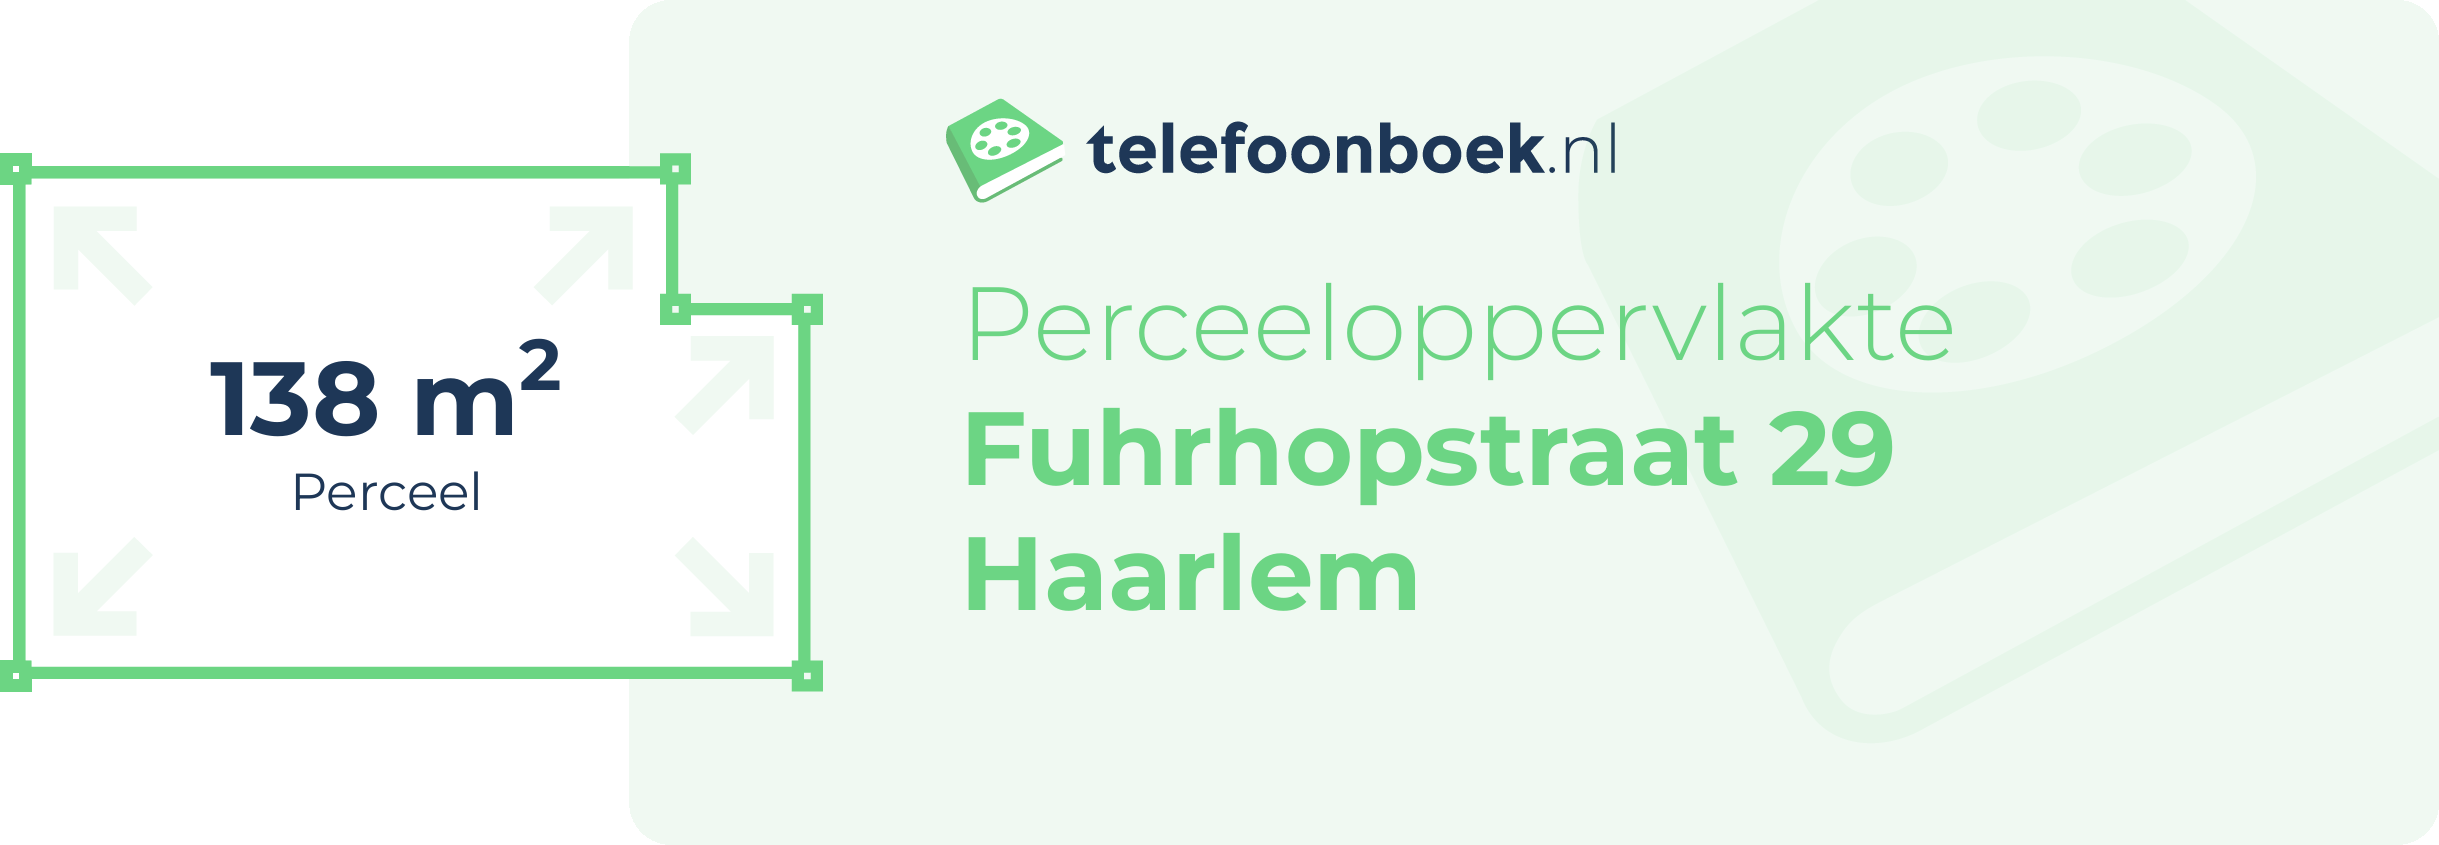 Perceeloppervlakte Fuhrhopstraat 29 Haarlem